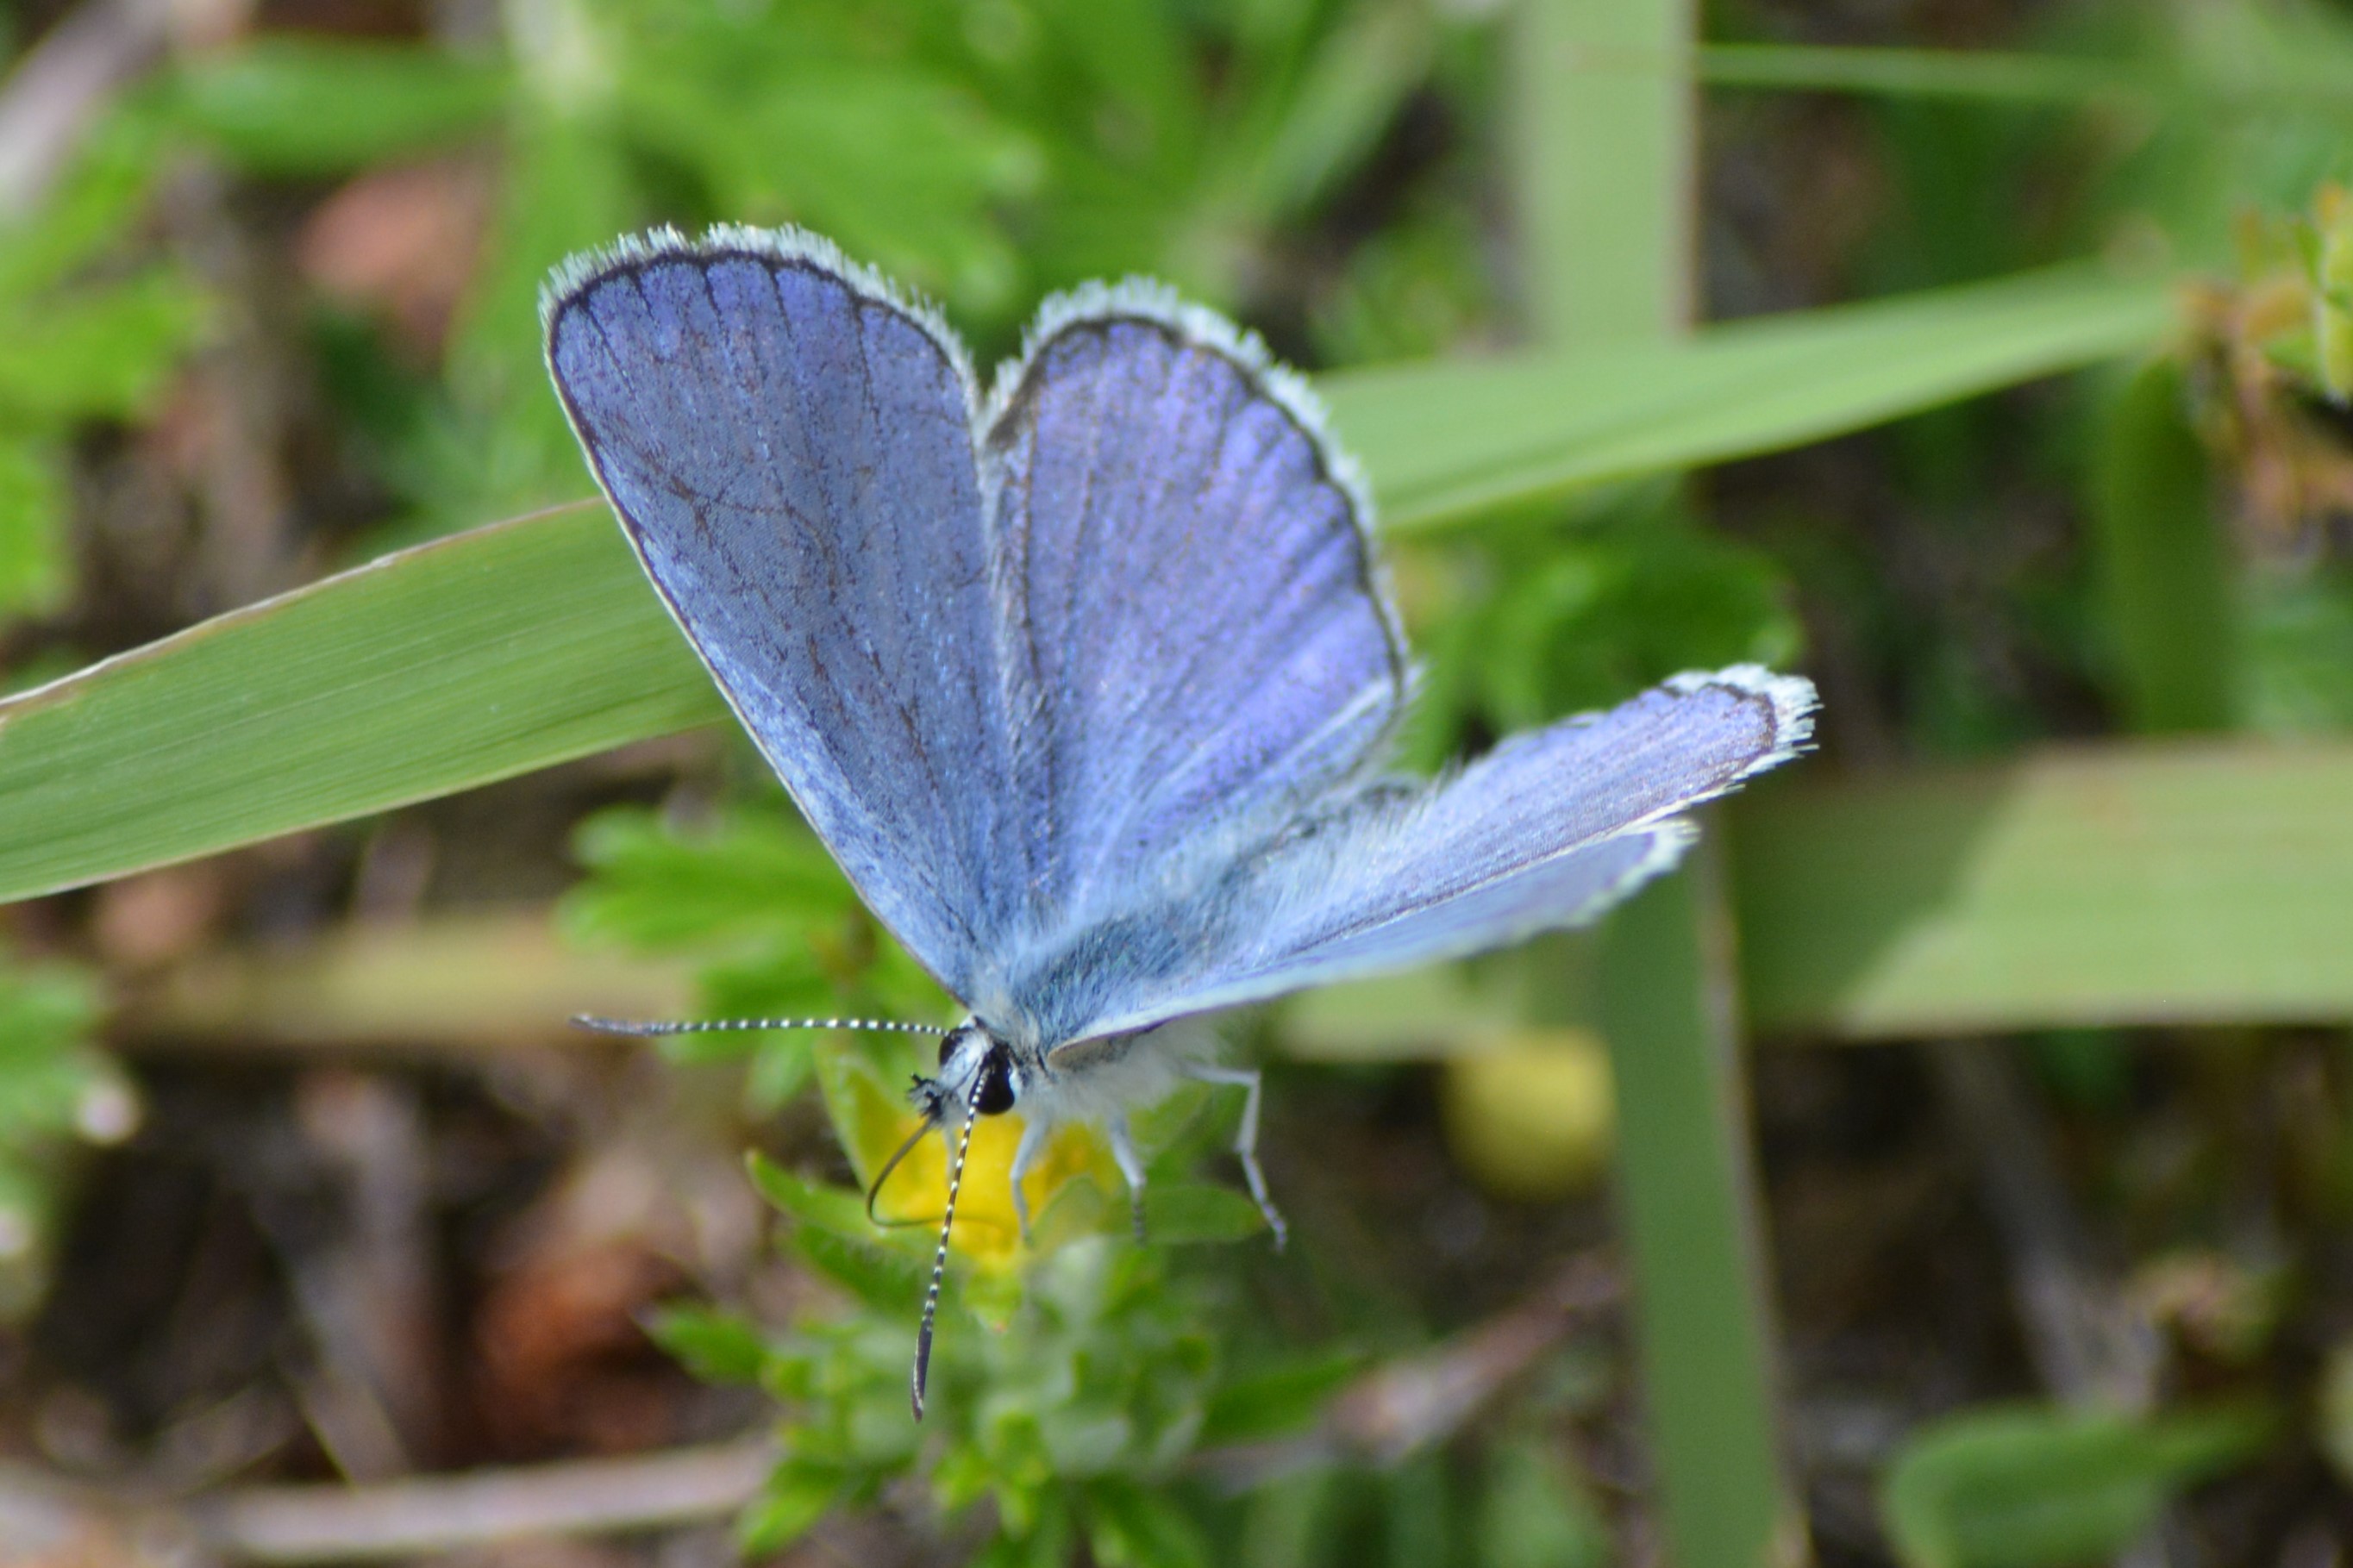 Male Karner blue butterfly 